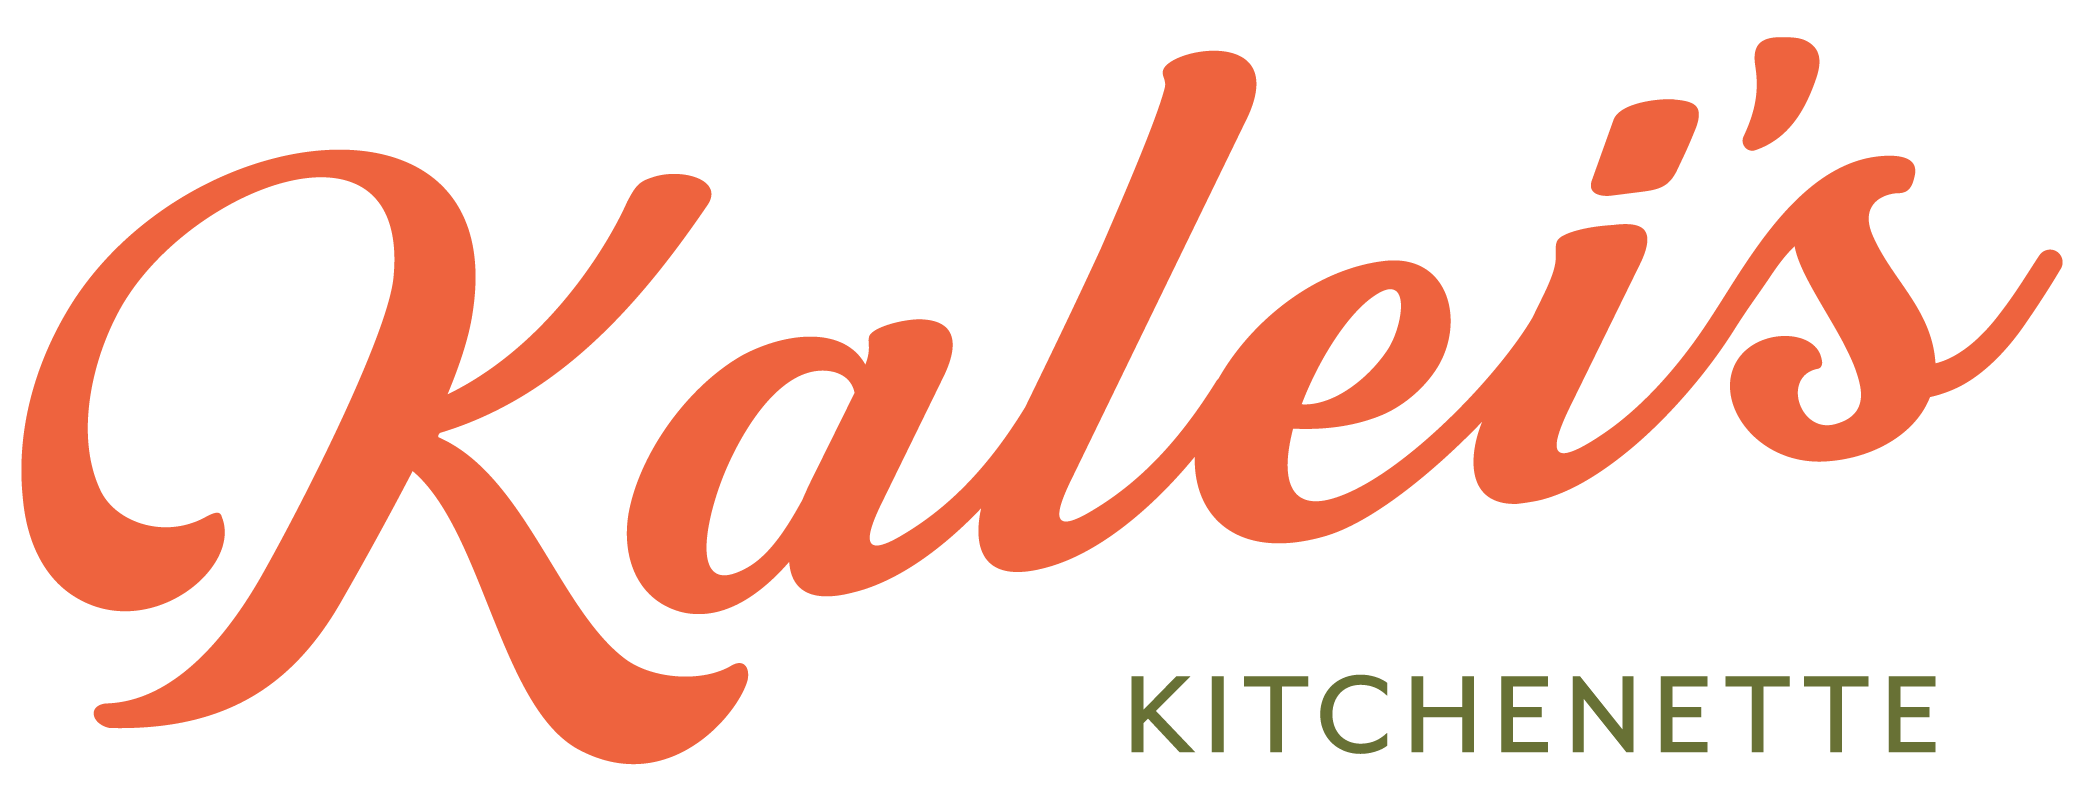 Kalei's Kitchenette Logo